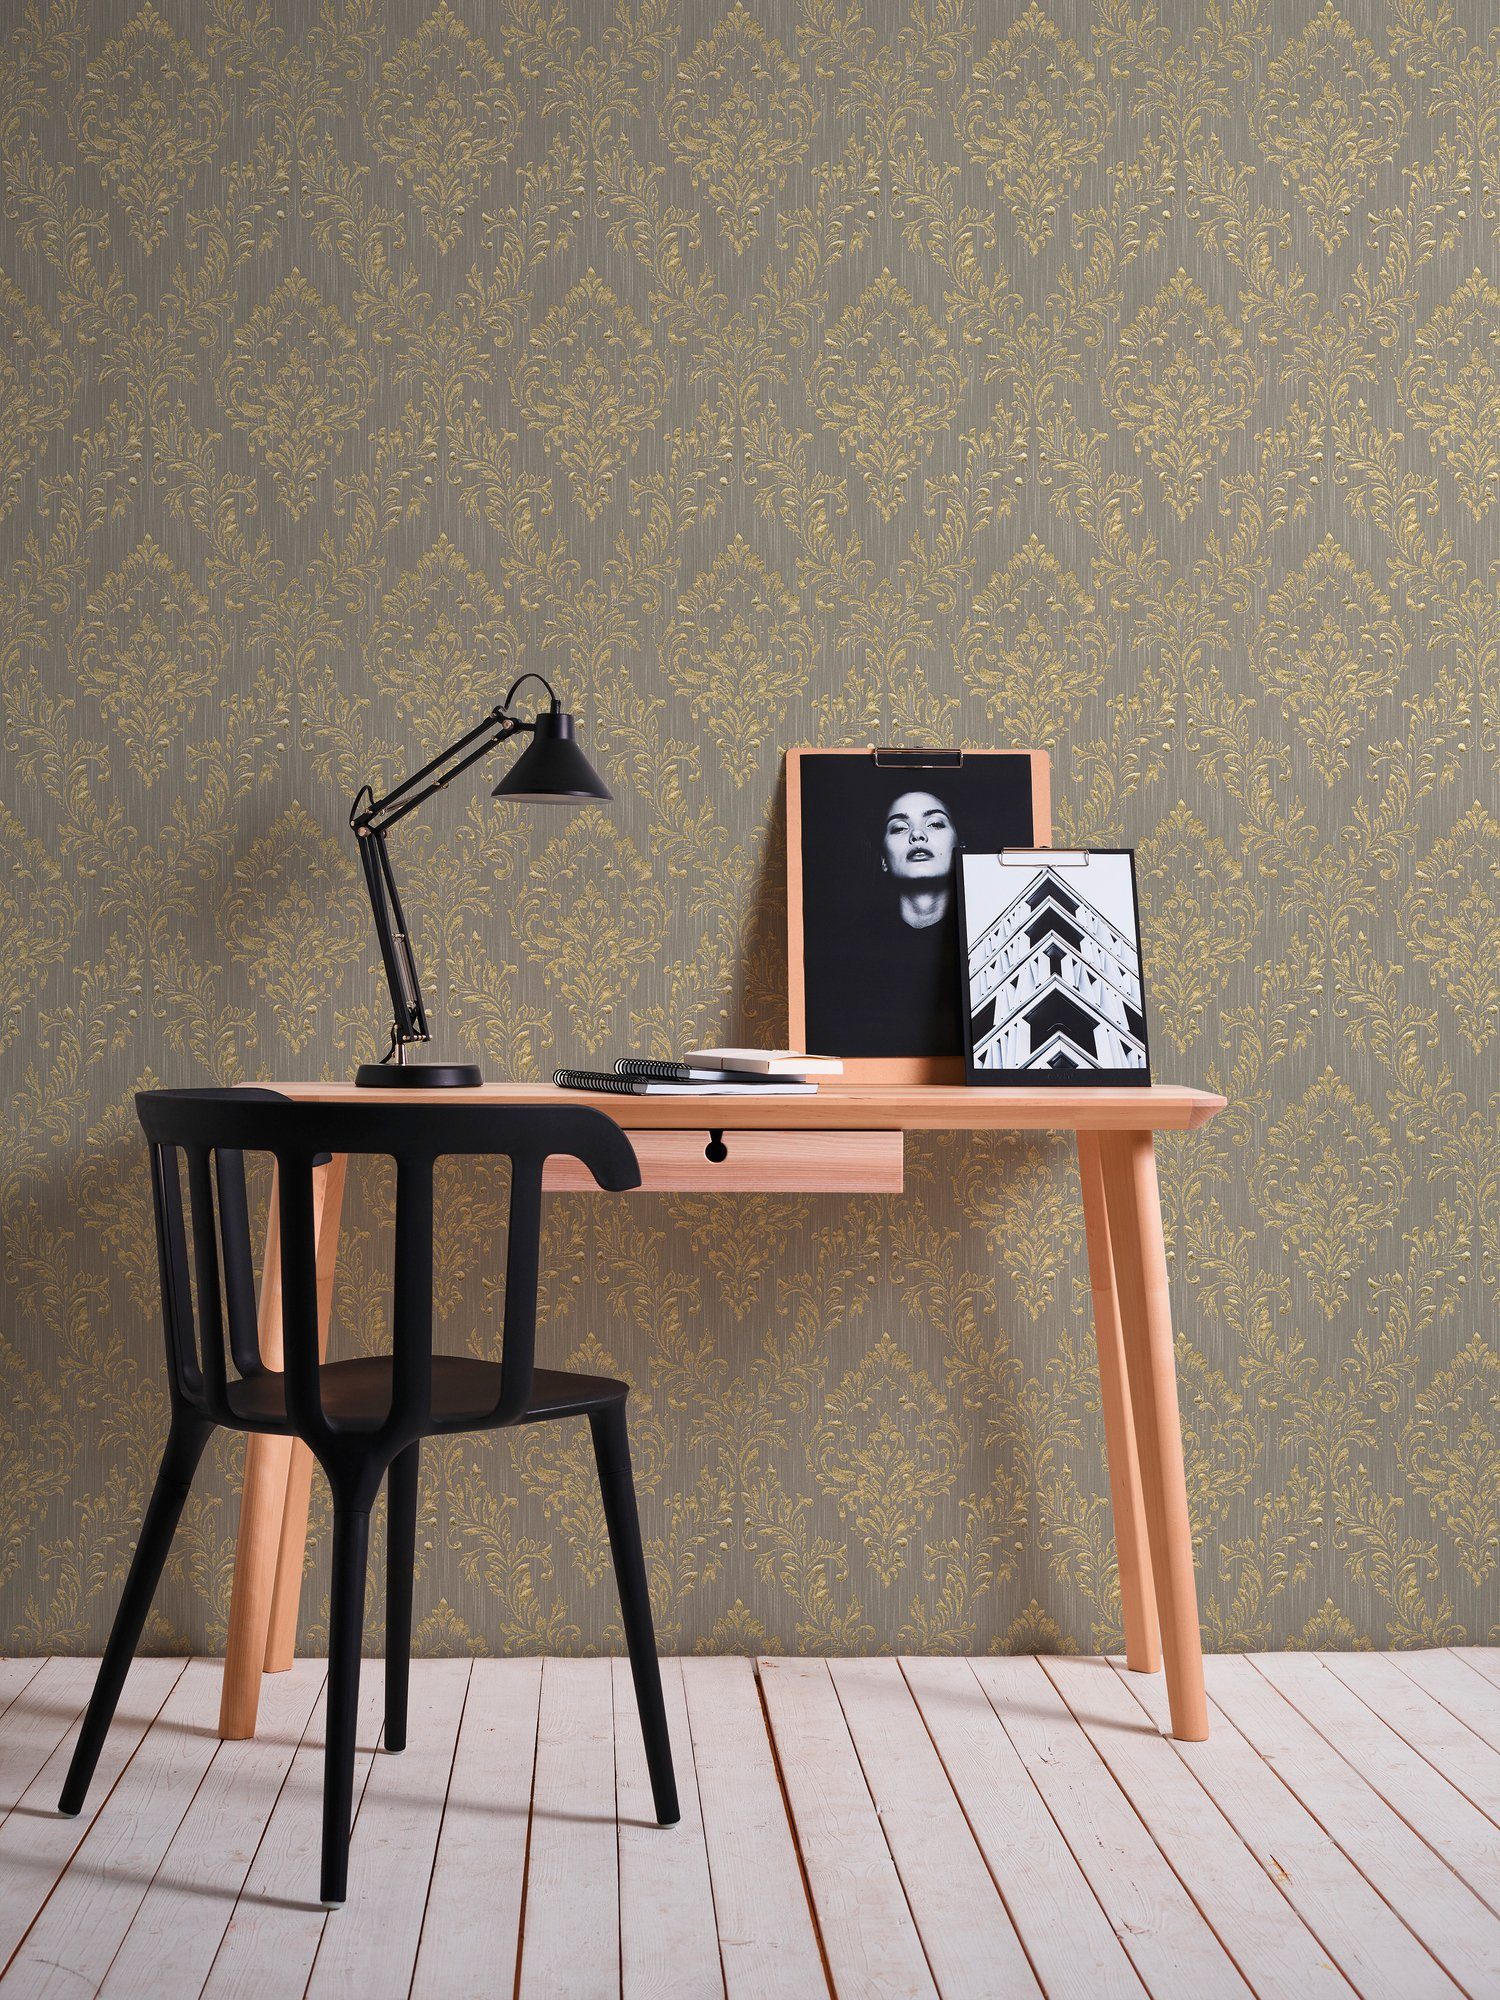 Metallic Paper matt, Ornament Barock Architects Barock, Silk, Tapete gold/dunkelbeige samtig, glänzend, Création A.S. Textiltapete